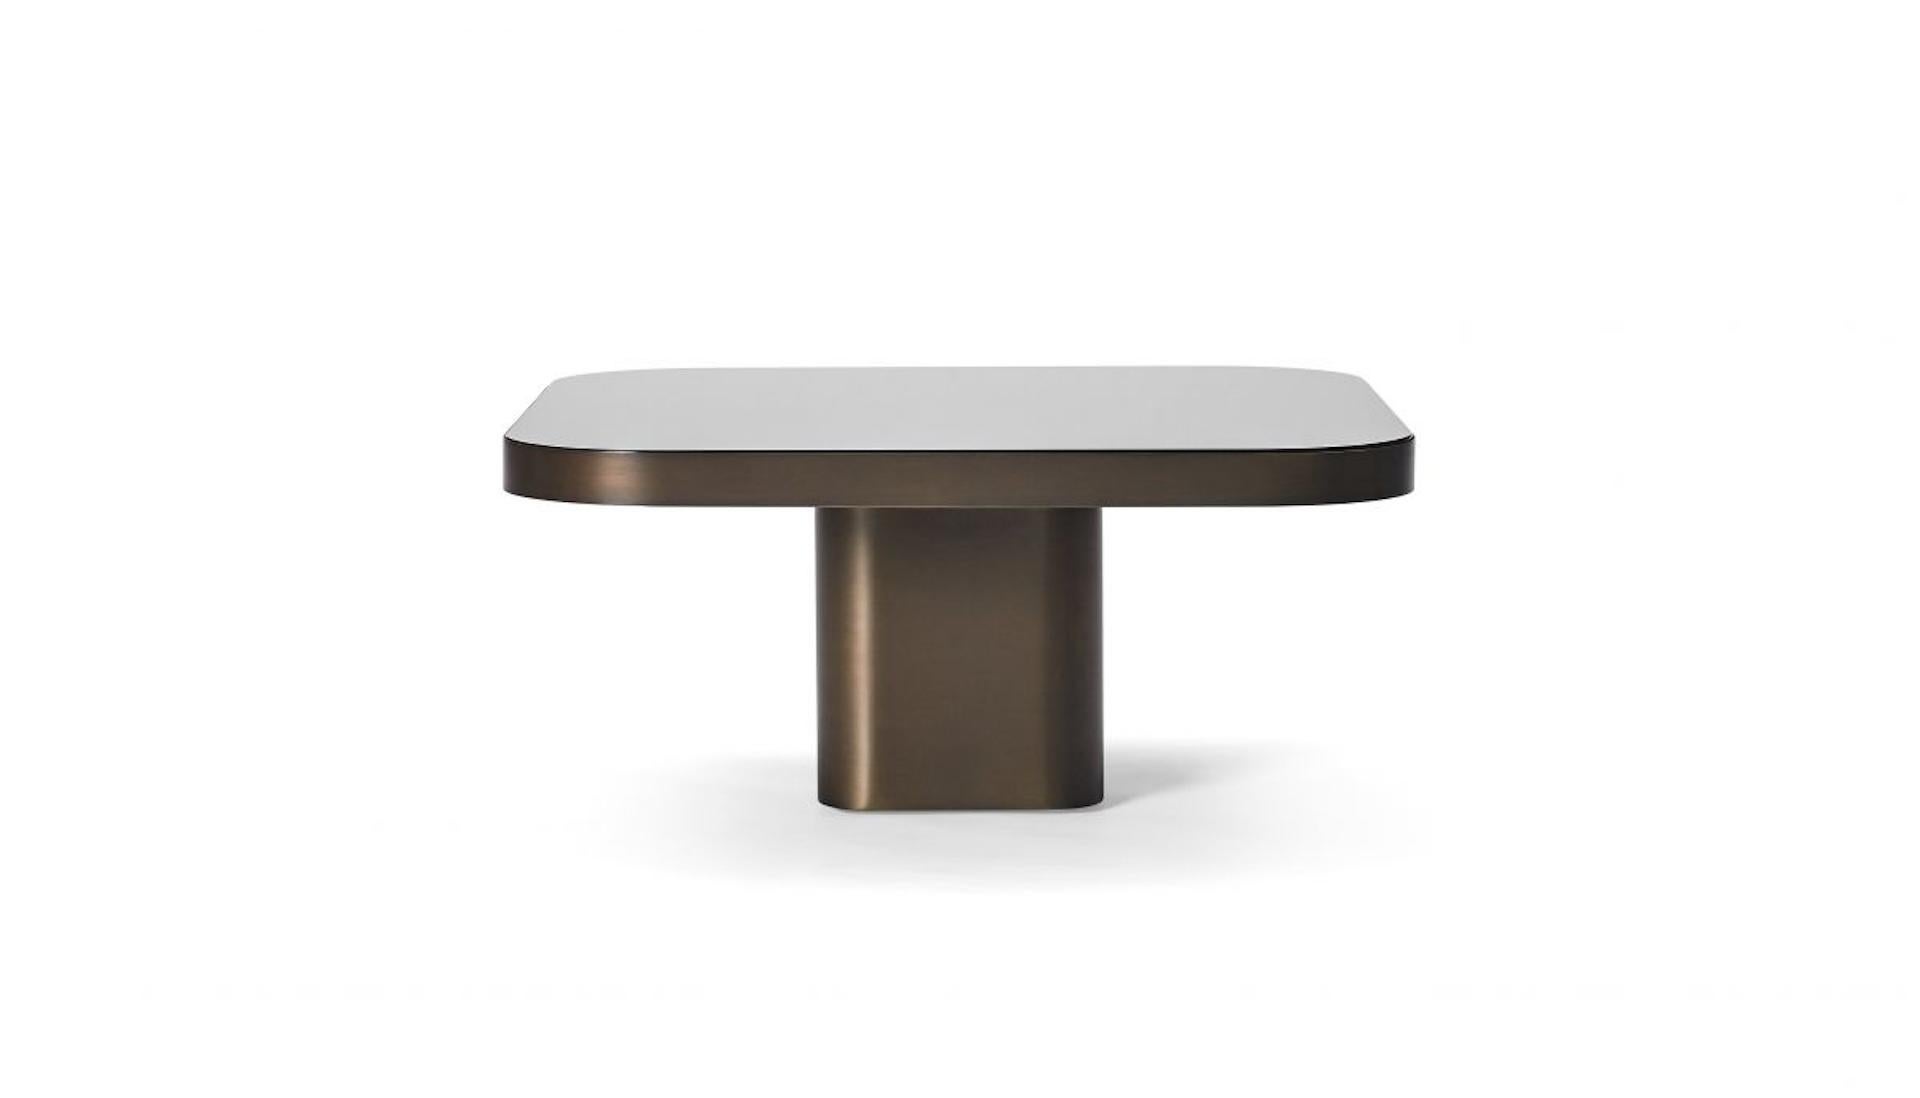 Set de table - 
Arc 3 et 5
dimensions de l'arc 3 : 70x70x31cm
Arc 5 : 100x100x 25cm

Inspiré par les lignes et les designs des années 1970, le Brésilien Guilherme Torres présente une table d'appoint ou une table basse à l'élégance décontractée. La